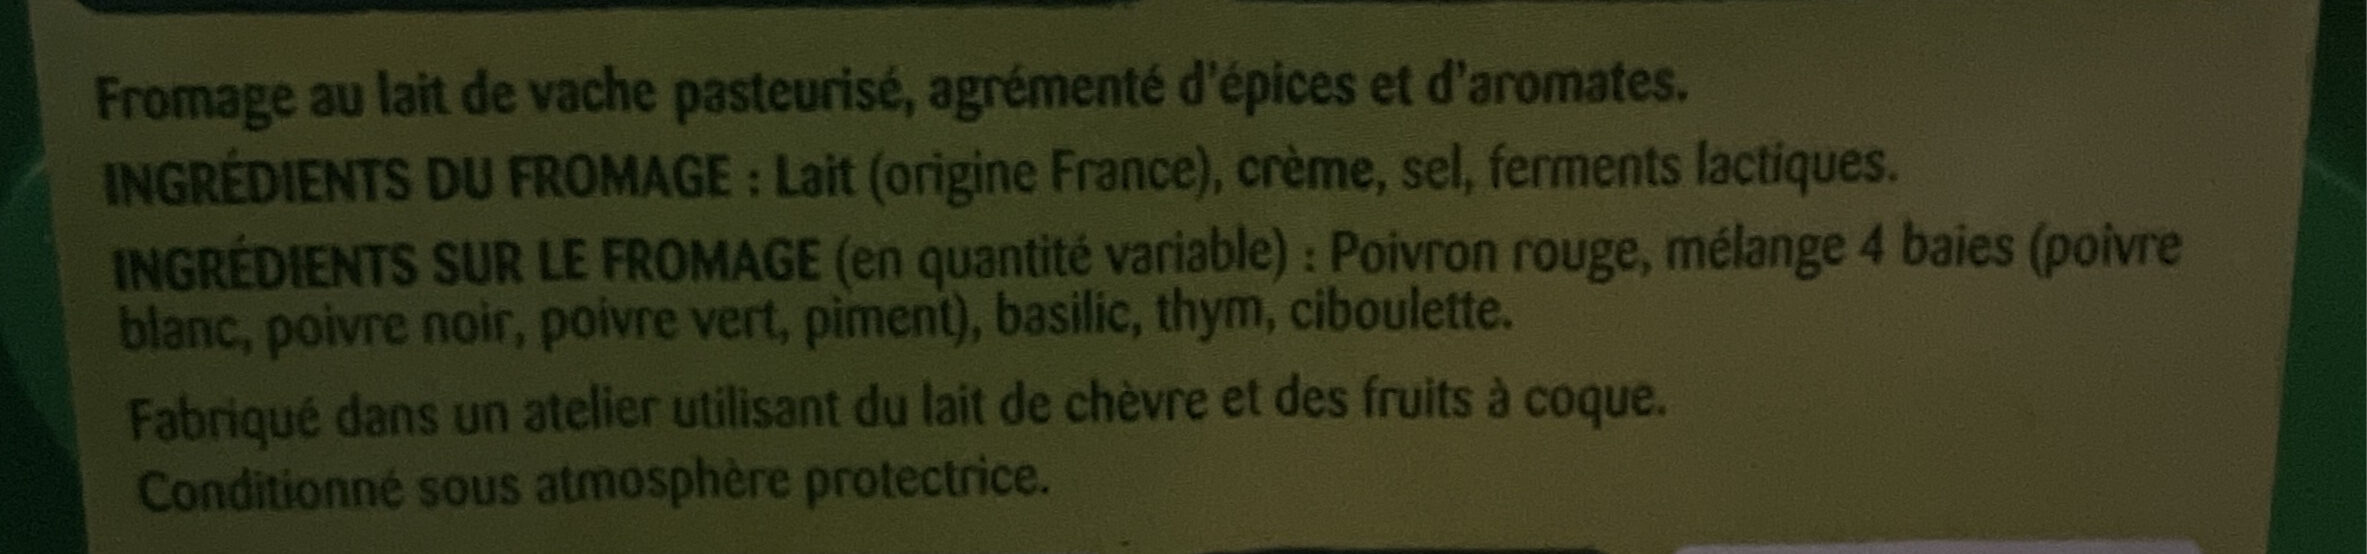 Saveurs de Provence - Ingrédients